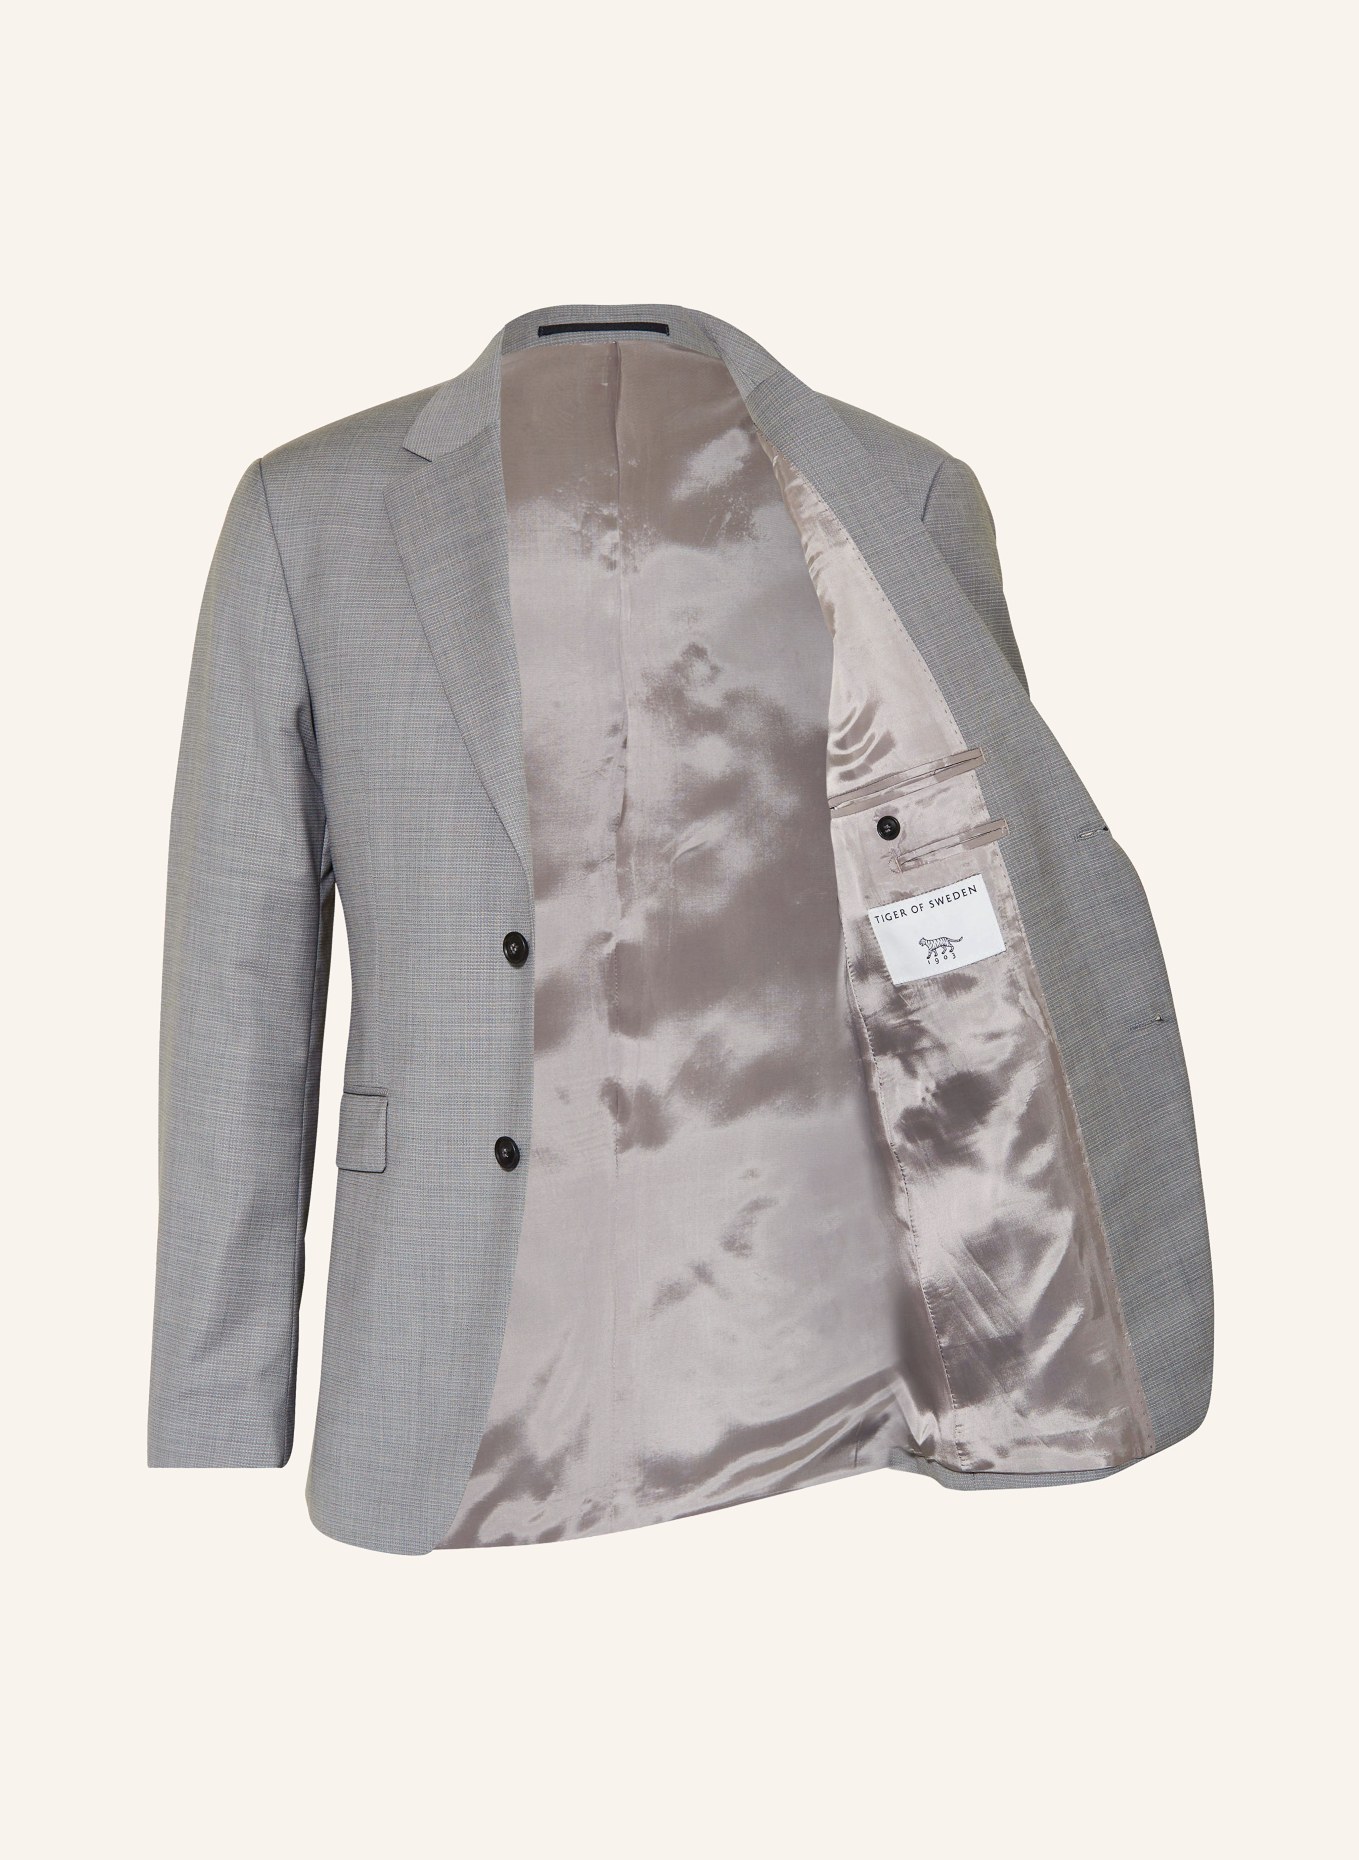 TIGER OF SWEDEN Suit jacket JUSTIN slim fit, Color: M04 Light Grey Melange (Image 4)